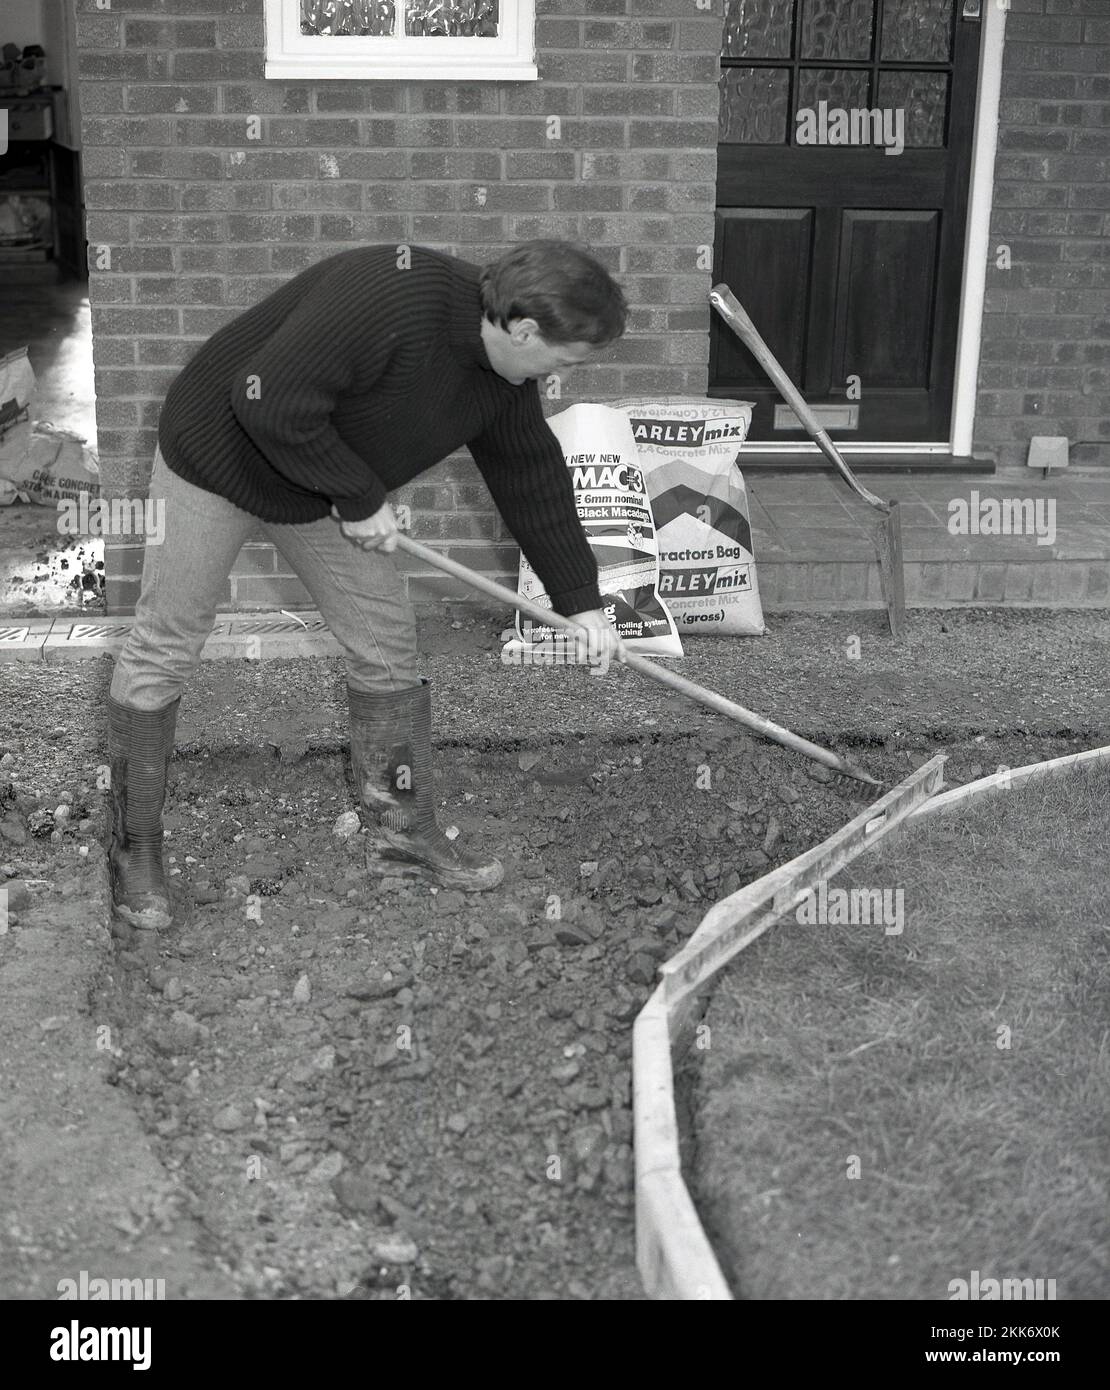 1980s, costruzione, un uomo che estende e riapre un'area su un vialetto e un sentiero davanti ad una casa, utilizzando un rastrello per spargere un corso di aggregato, posato contro nuovi bordi di cemento, Inghilterra, Regno Unito. Foto Stock